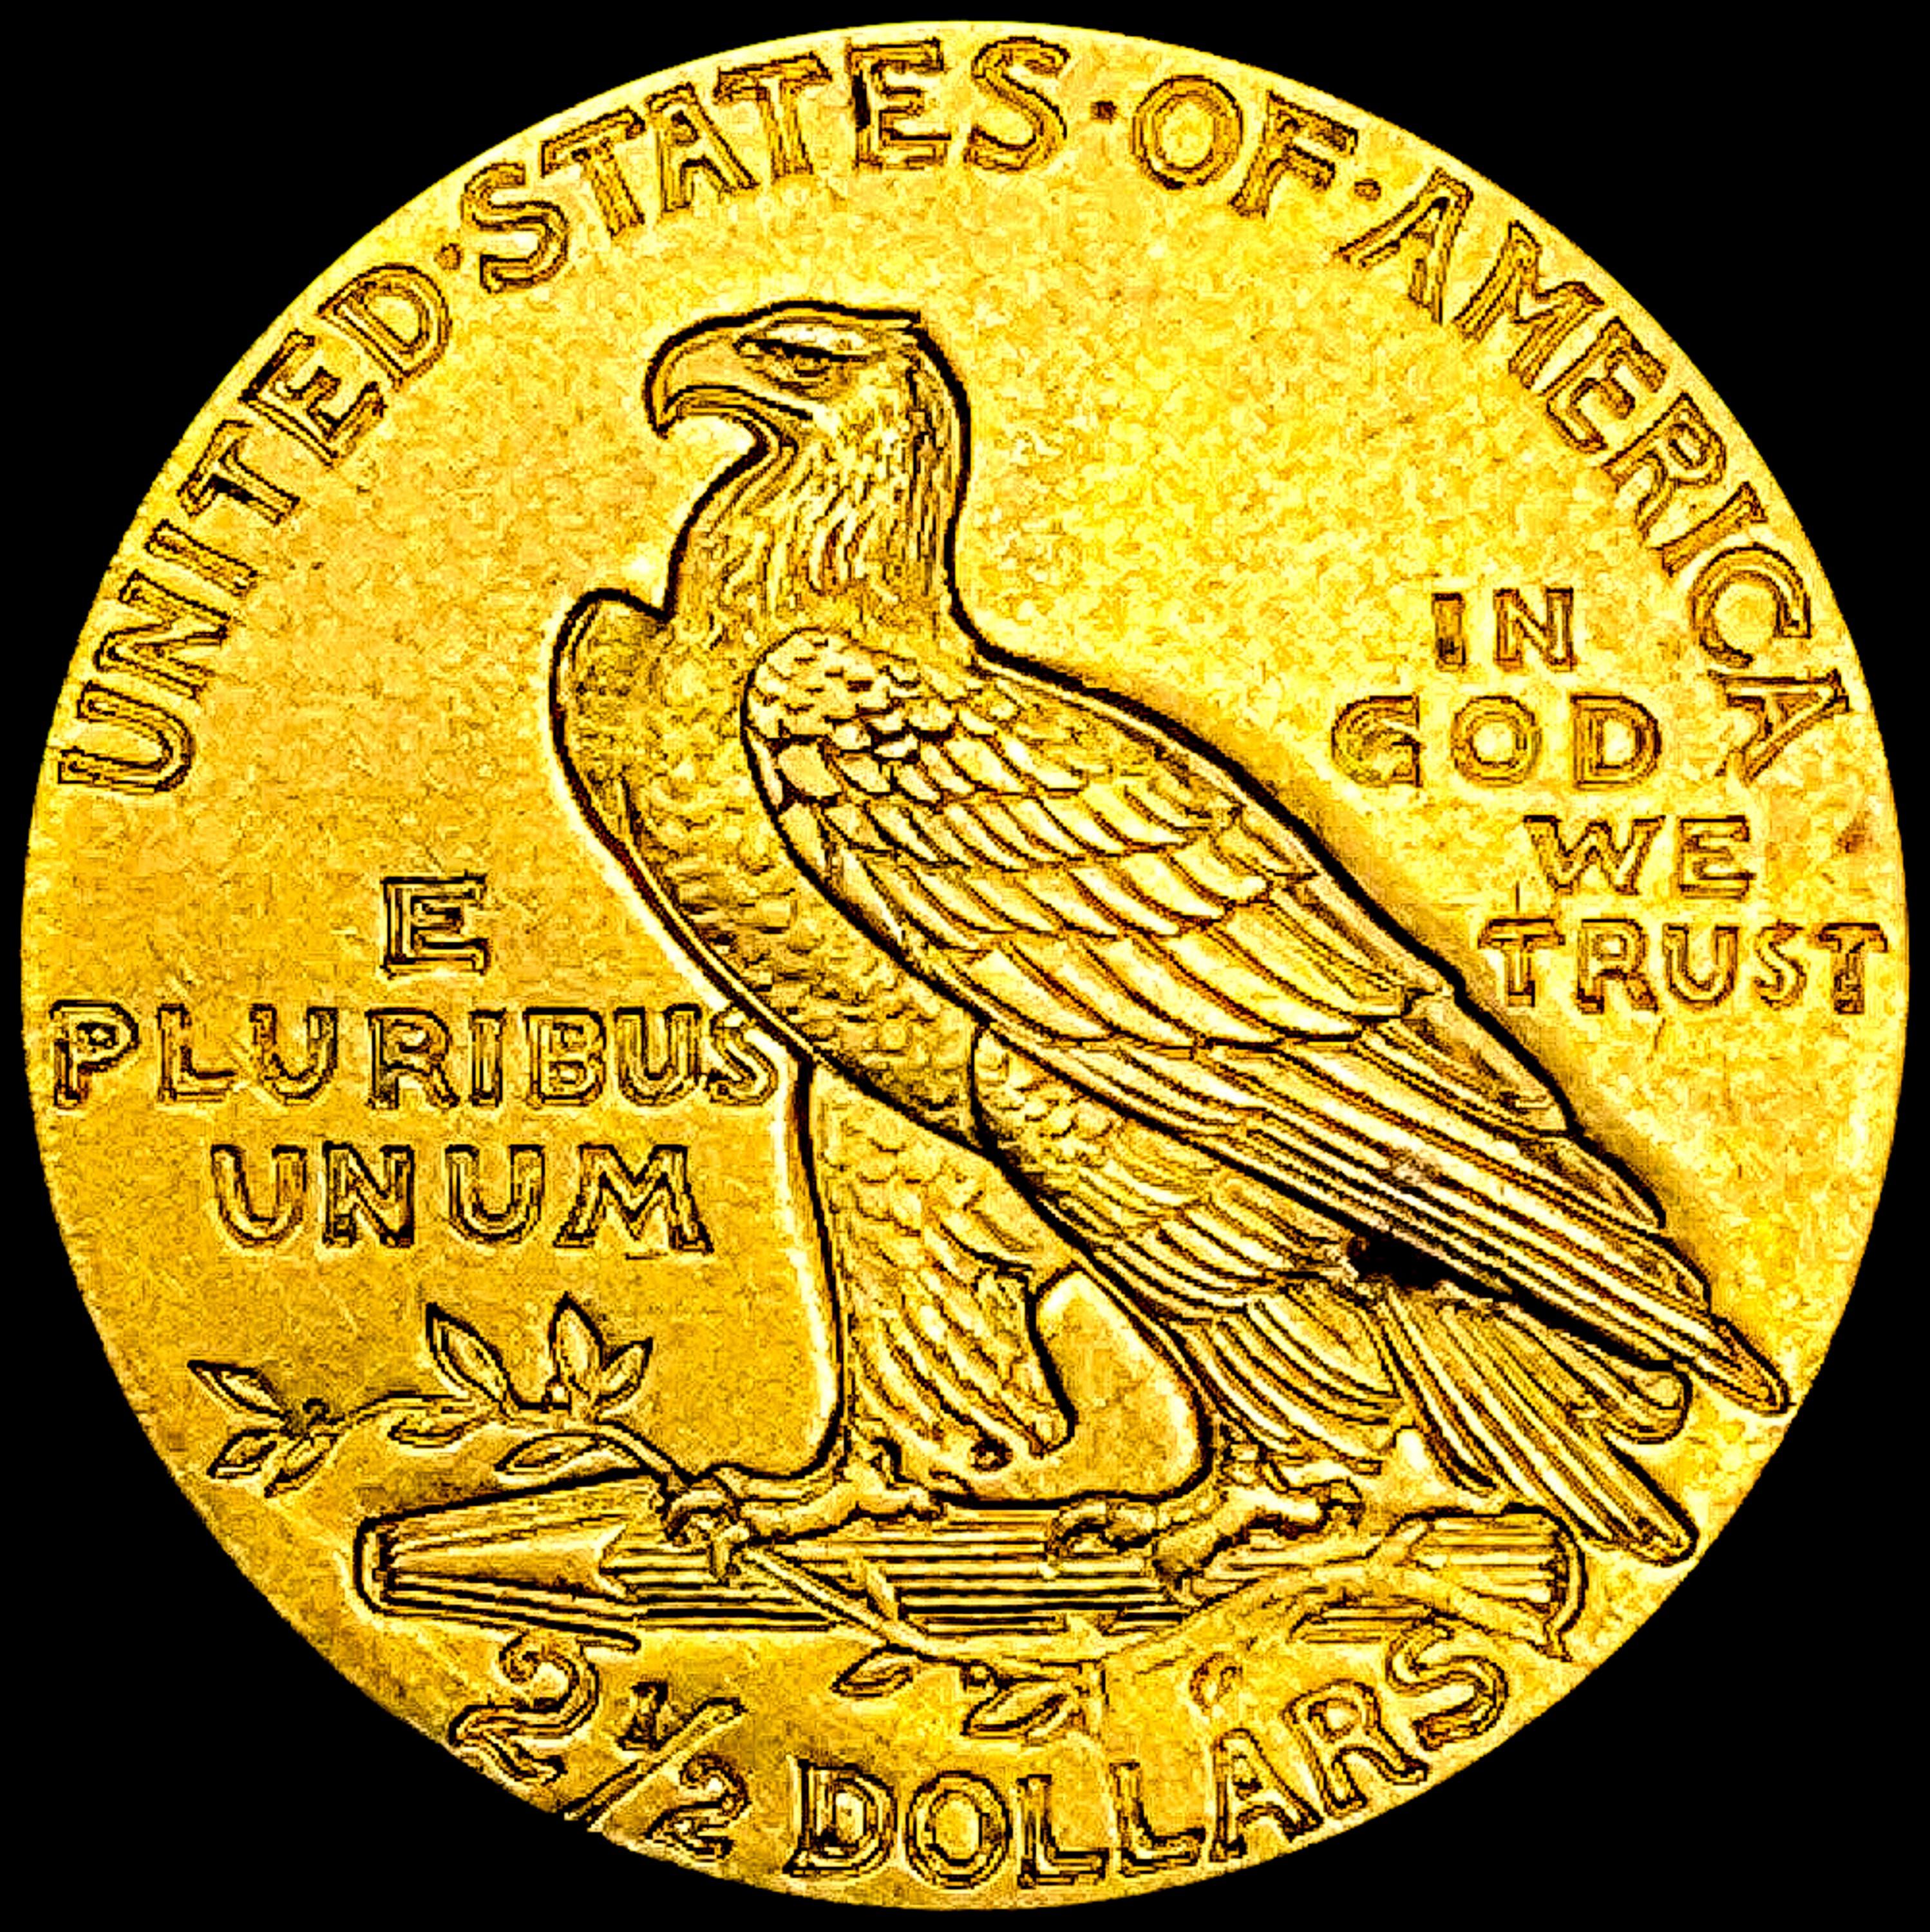 1911 $2.50 Gold Quarter Eagle CHOICE AU